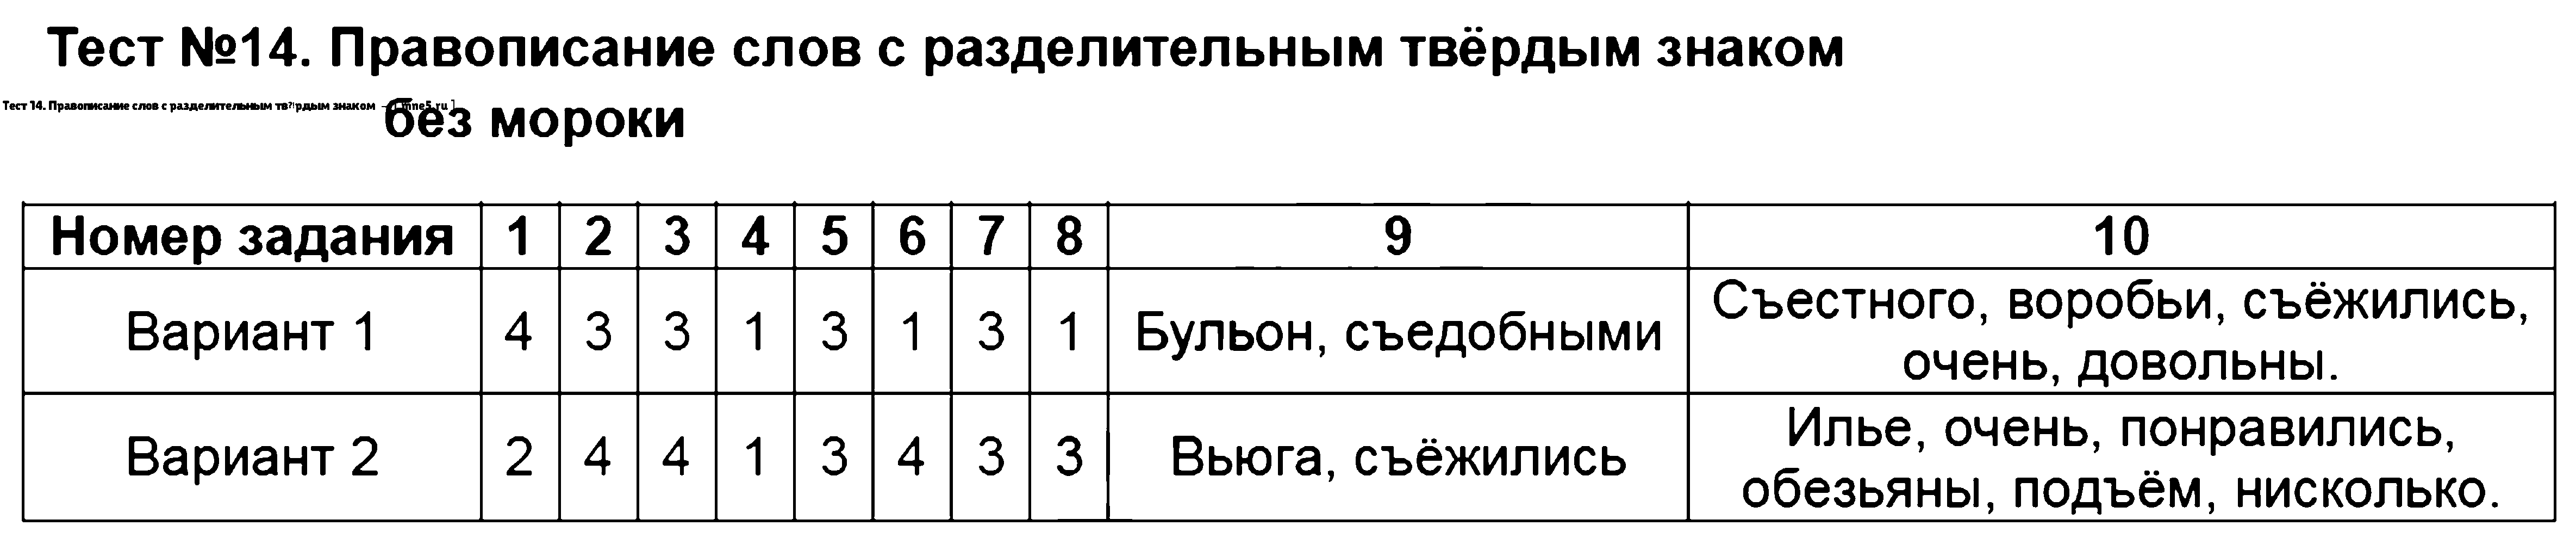 ГДЗ Русский язык 3 класс - Тест 14. Правописание слов с разделительным твёрдым знаком